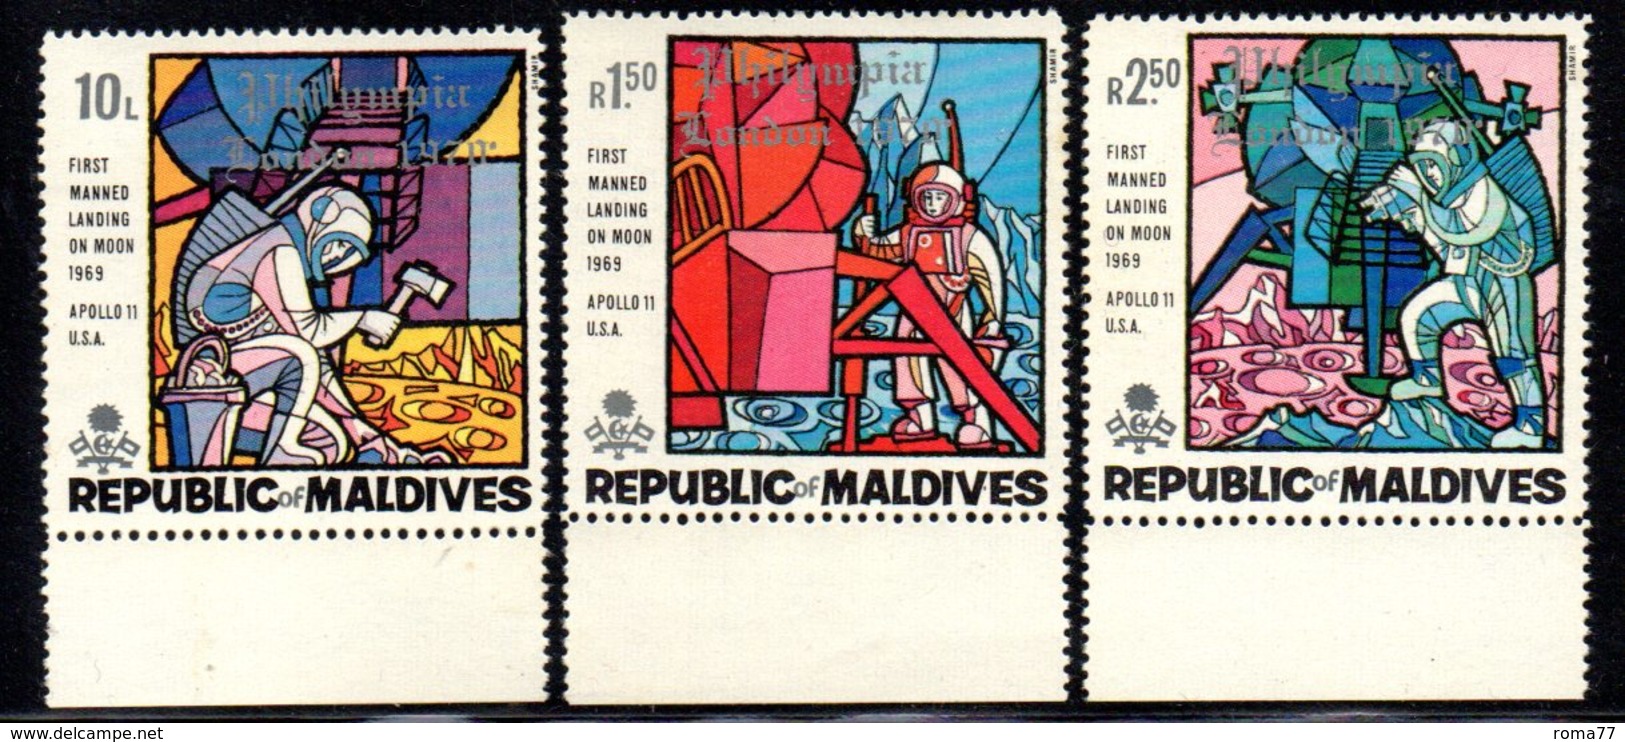 CI1007 - MALDIVE ISLANDS 1970- PHILIMPIA Serie 335/337  *** - Maldives (...-1965)